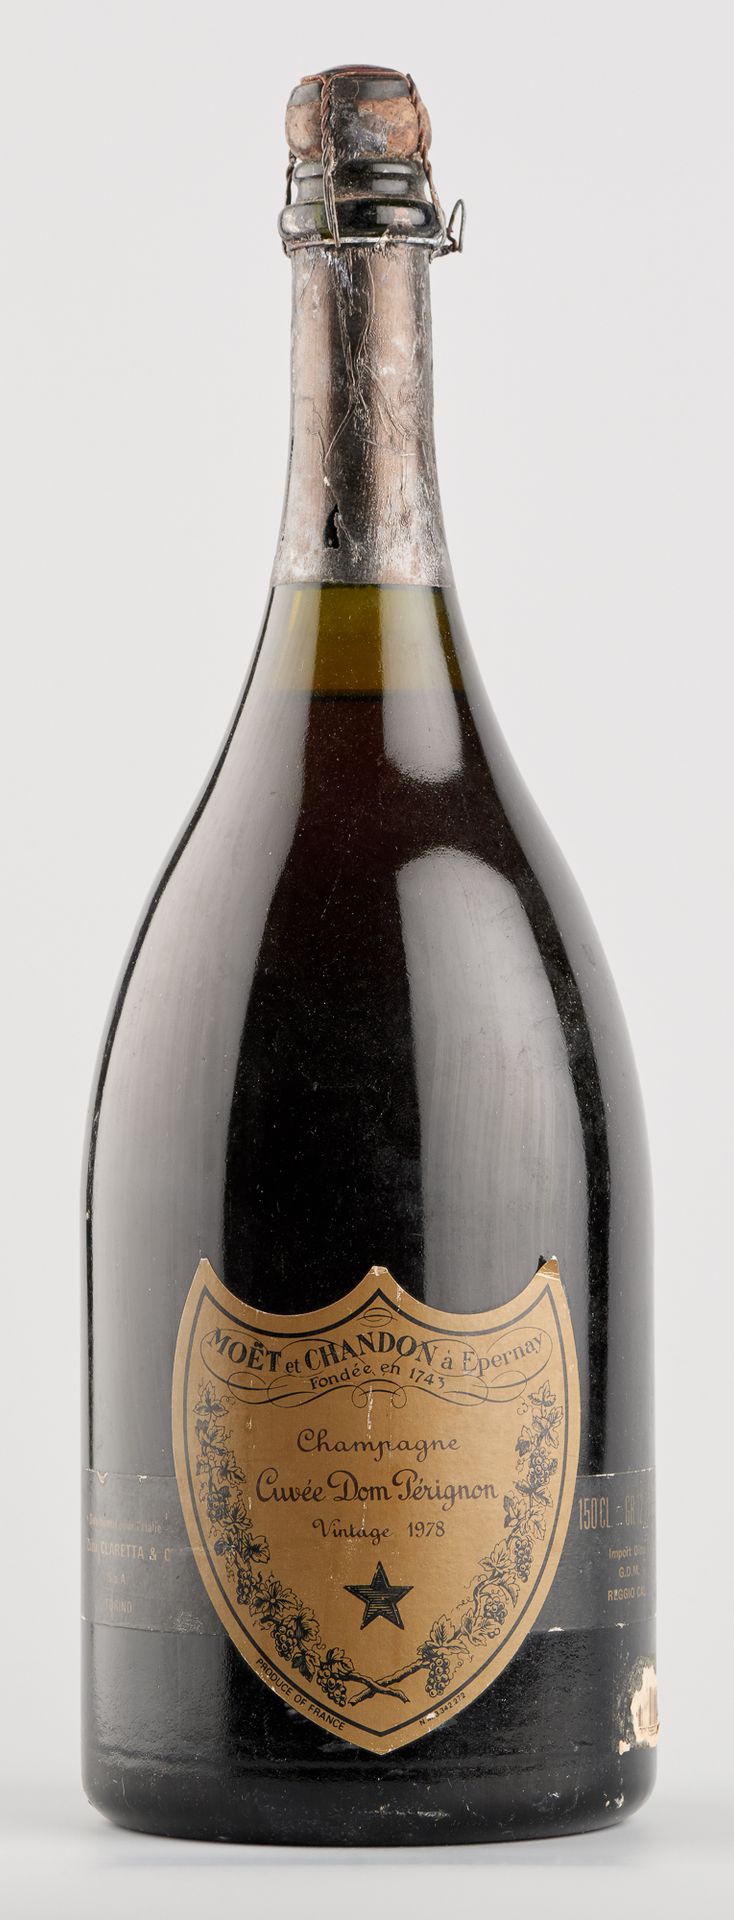 VIN 佩尼翁香槟酒，年份，ELA，铅封轻微损坏，大瓶，1978年，1个左右。

Q: 1